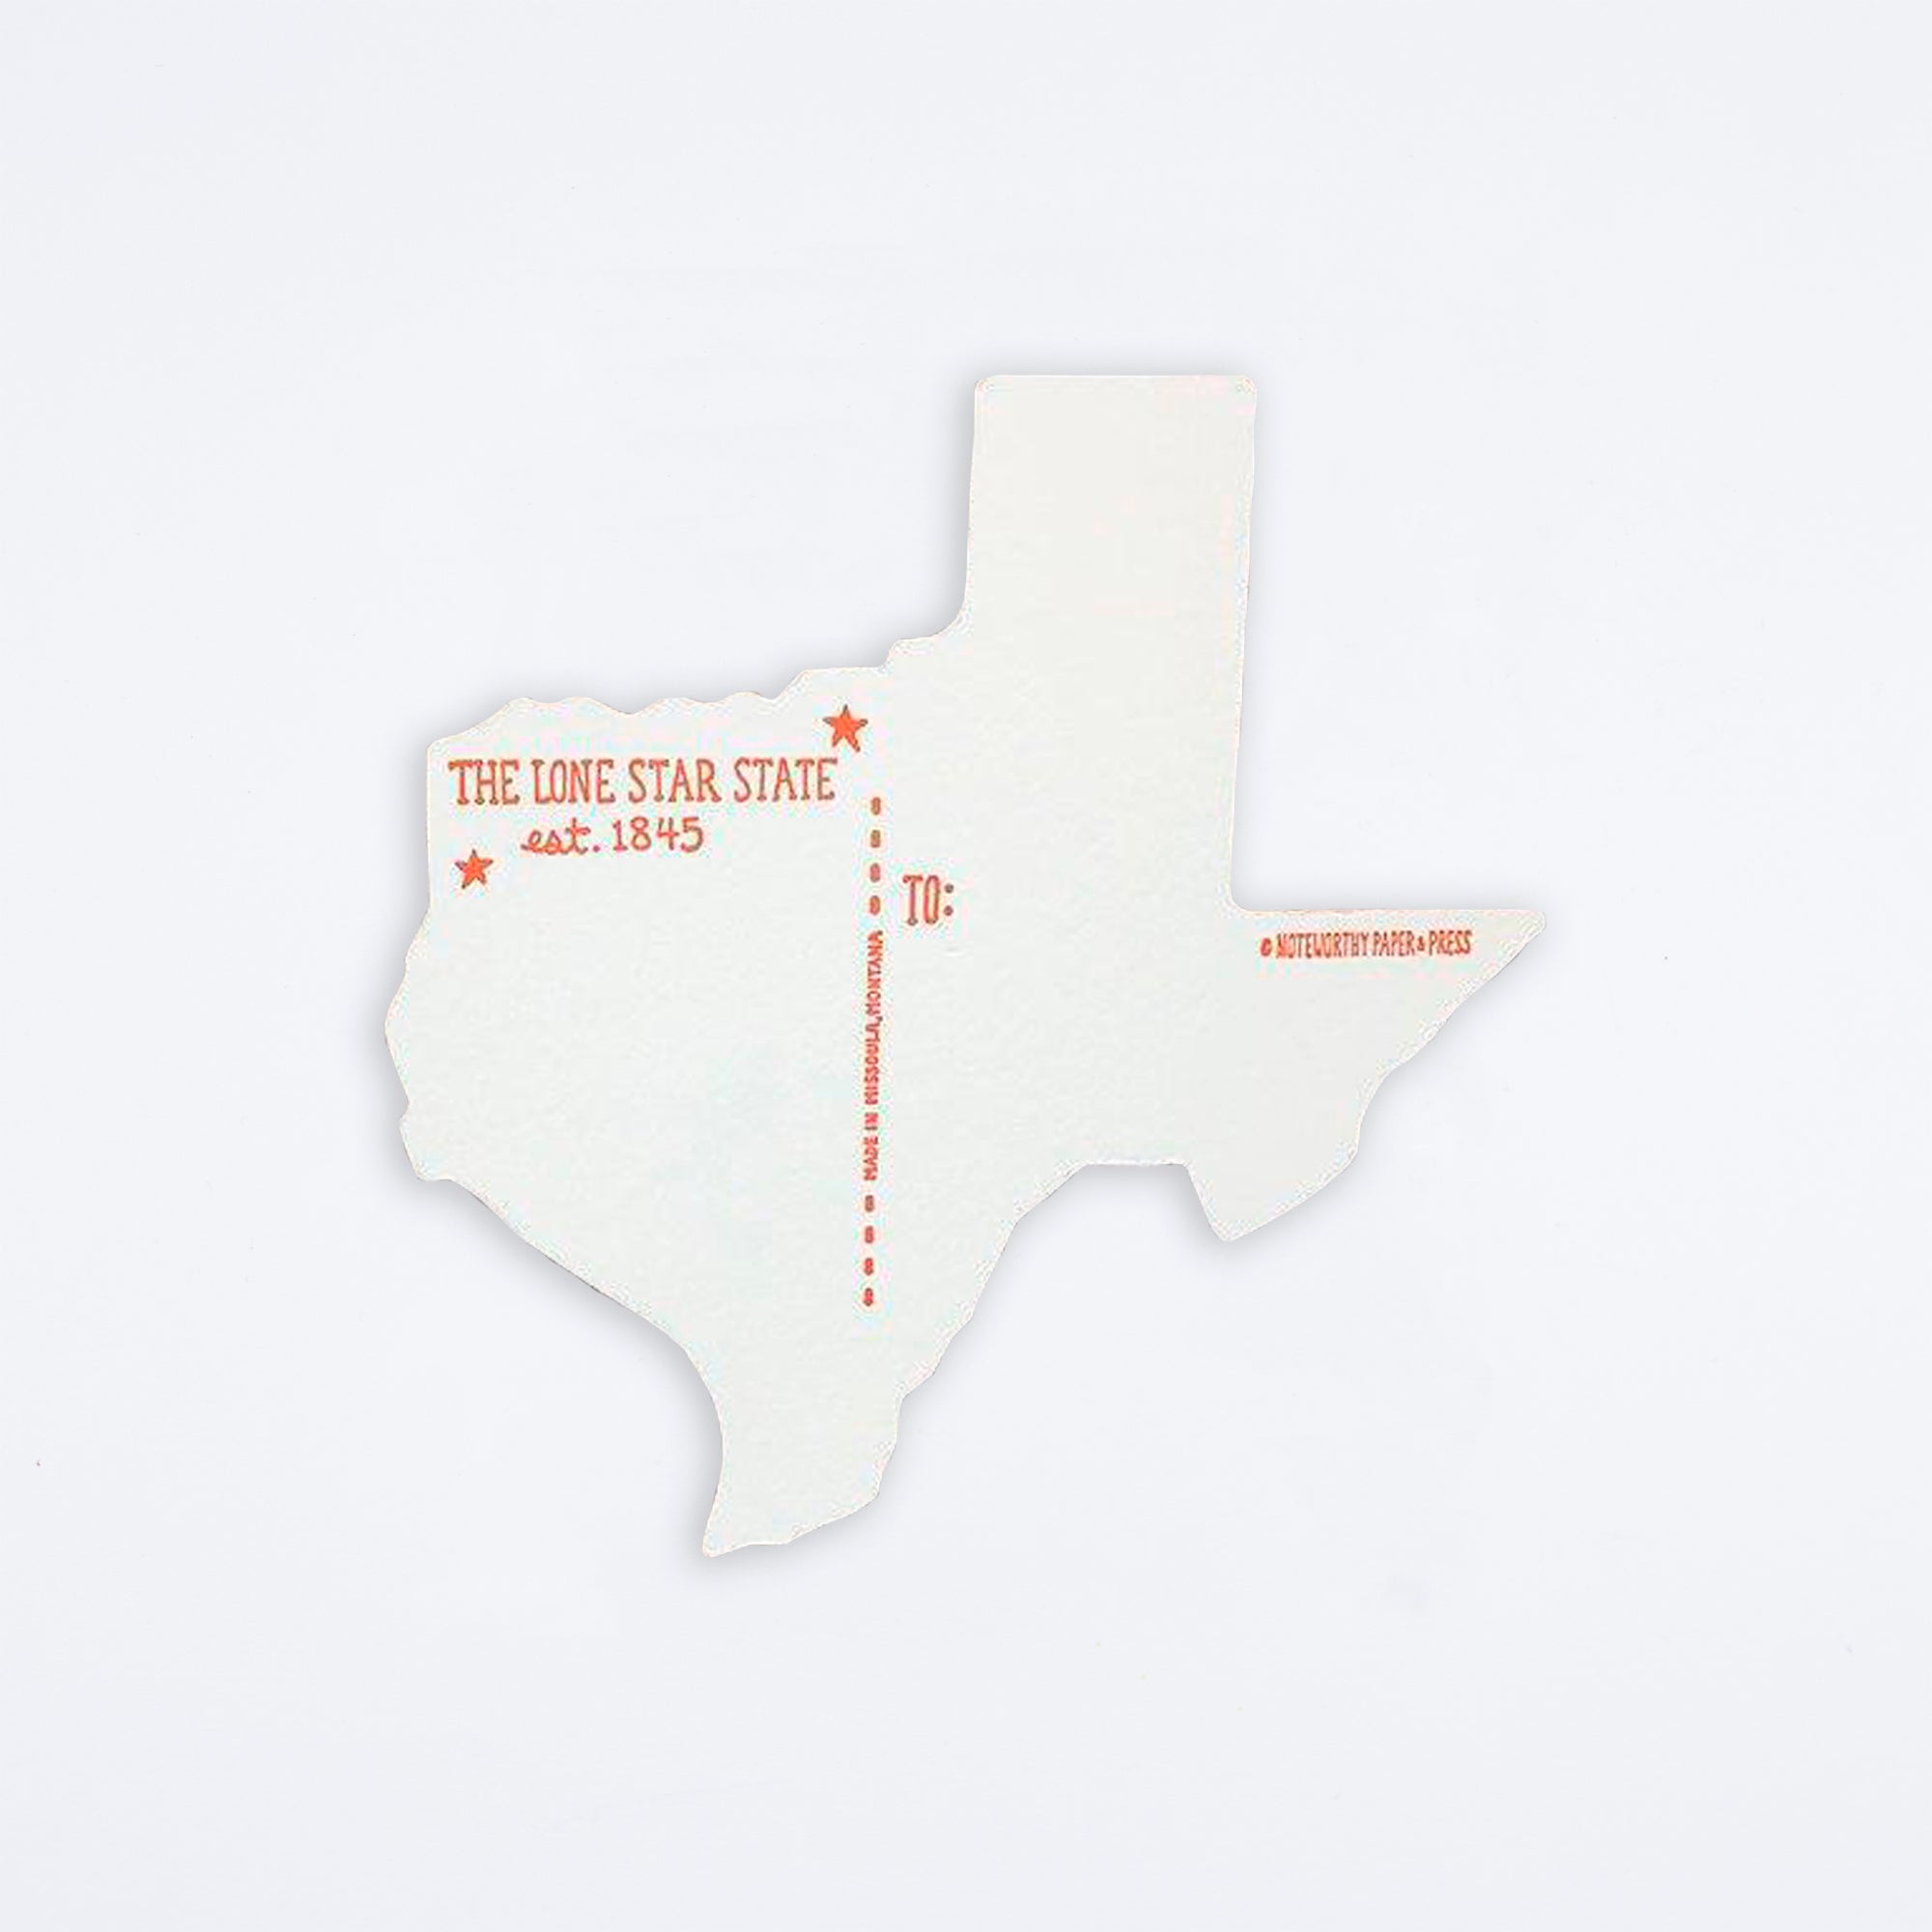 Greetings from Texas Die Cut Postcard